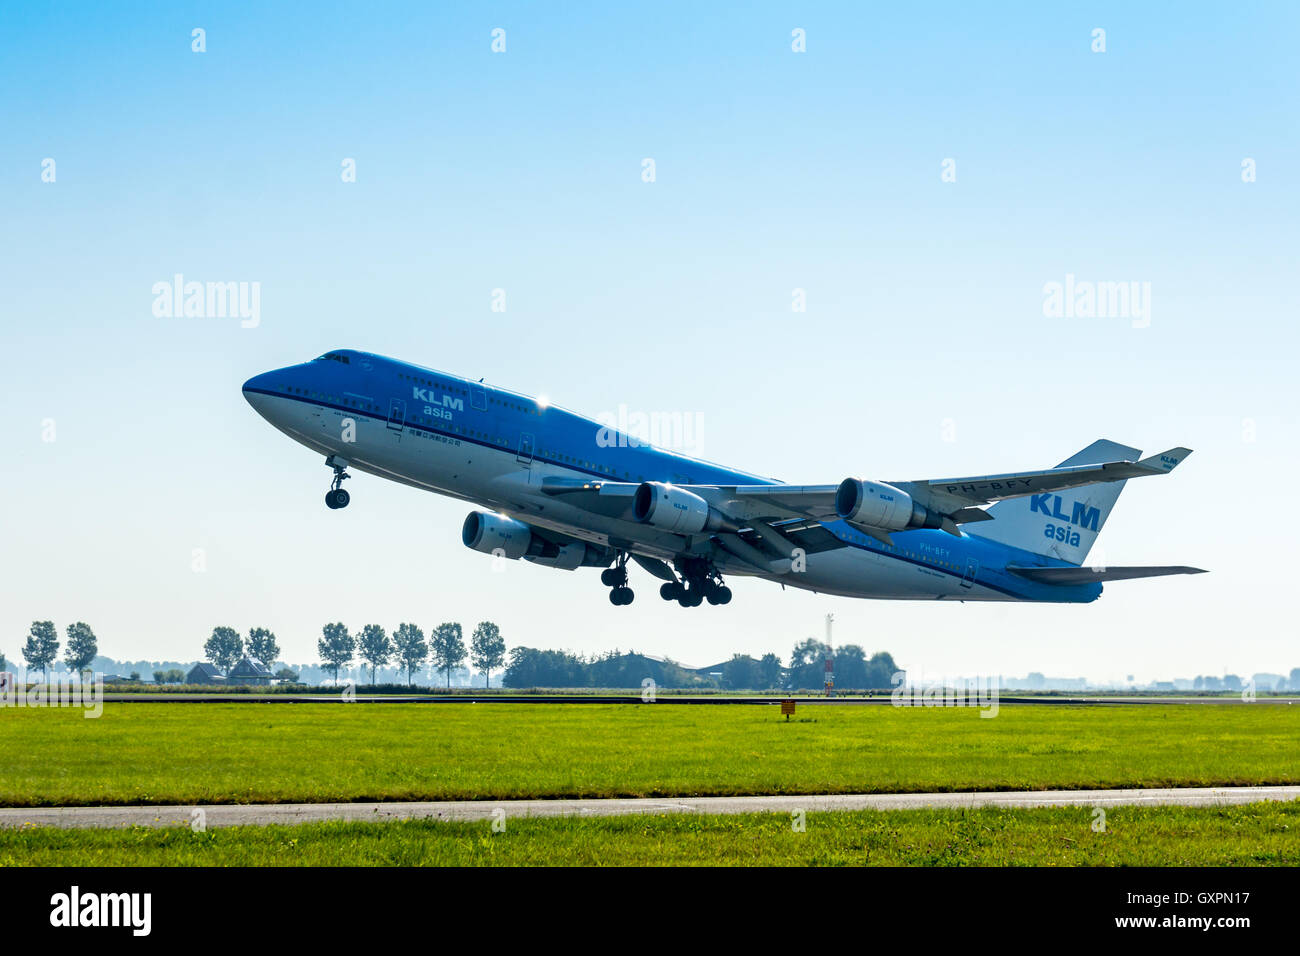 Polderbaan Aeroporto Schiphol, Paesi Bassi - Sep 20, 2016: KLM Air France Boeing 747 tenuto fuori all'Aeroporto di Amsterdam Schiphol Foto Stock